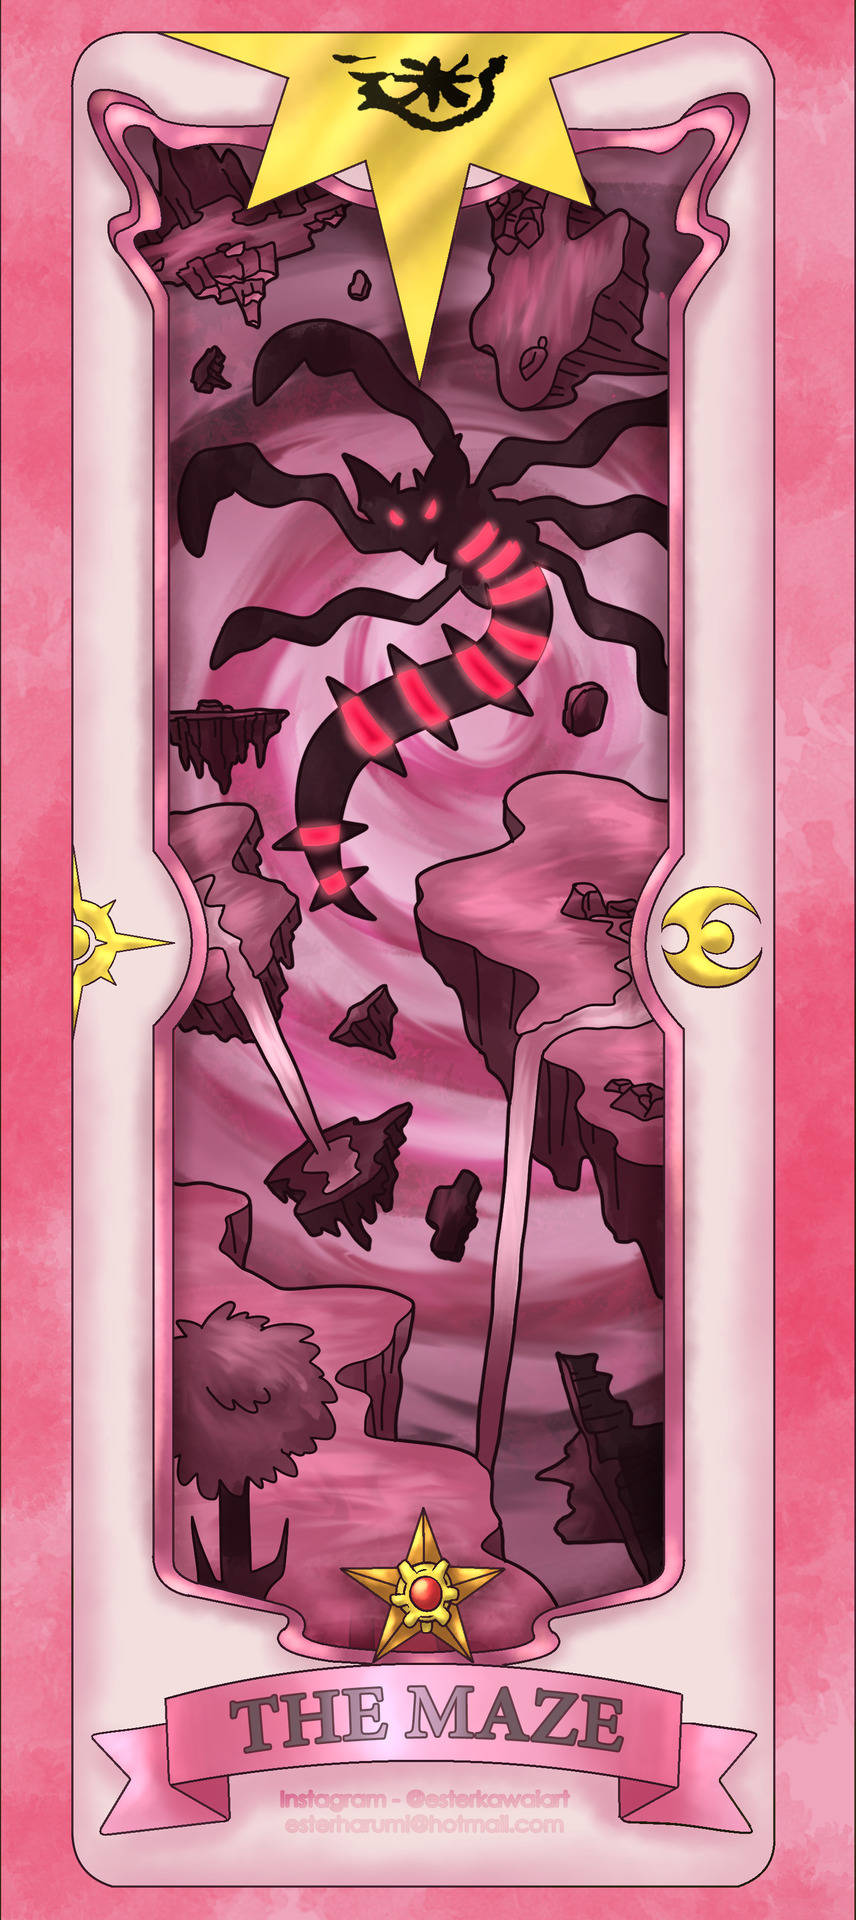 Giratina, Mythical Legendary Pokemon Of The Maze Background